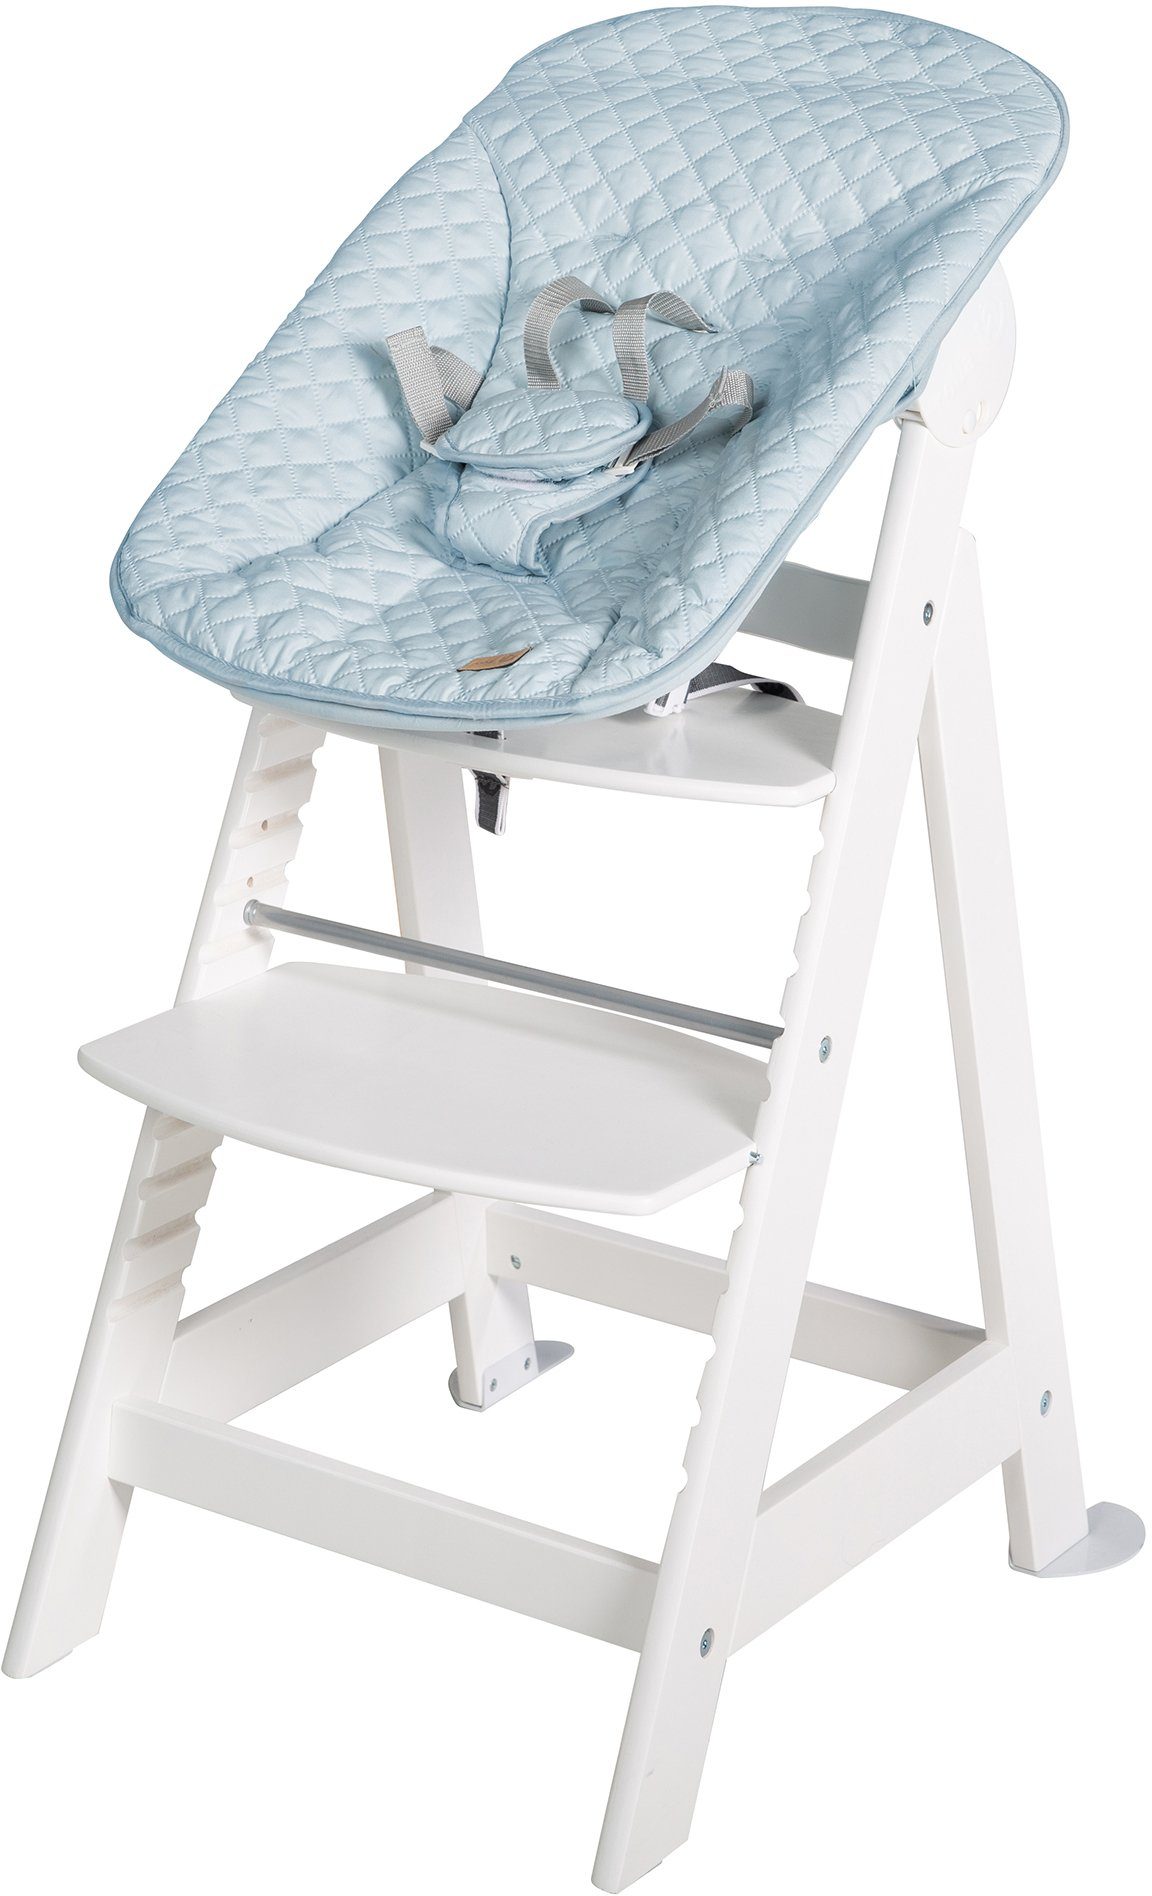 Treppenhochstuhl mit Up, 2-in-1 Neugeborenen-Aufsatz hellblau/sky/weiß Style, Set Born Hochstuhl roba®